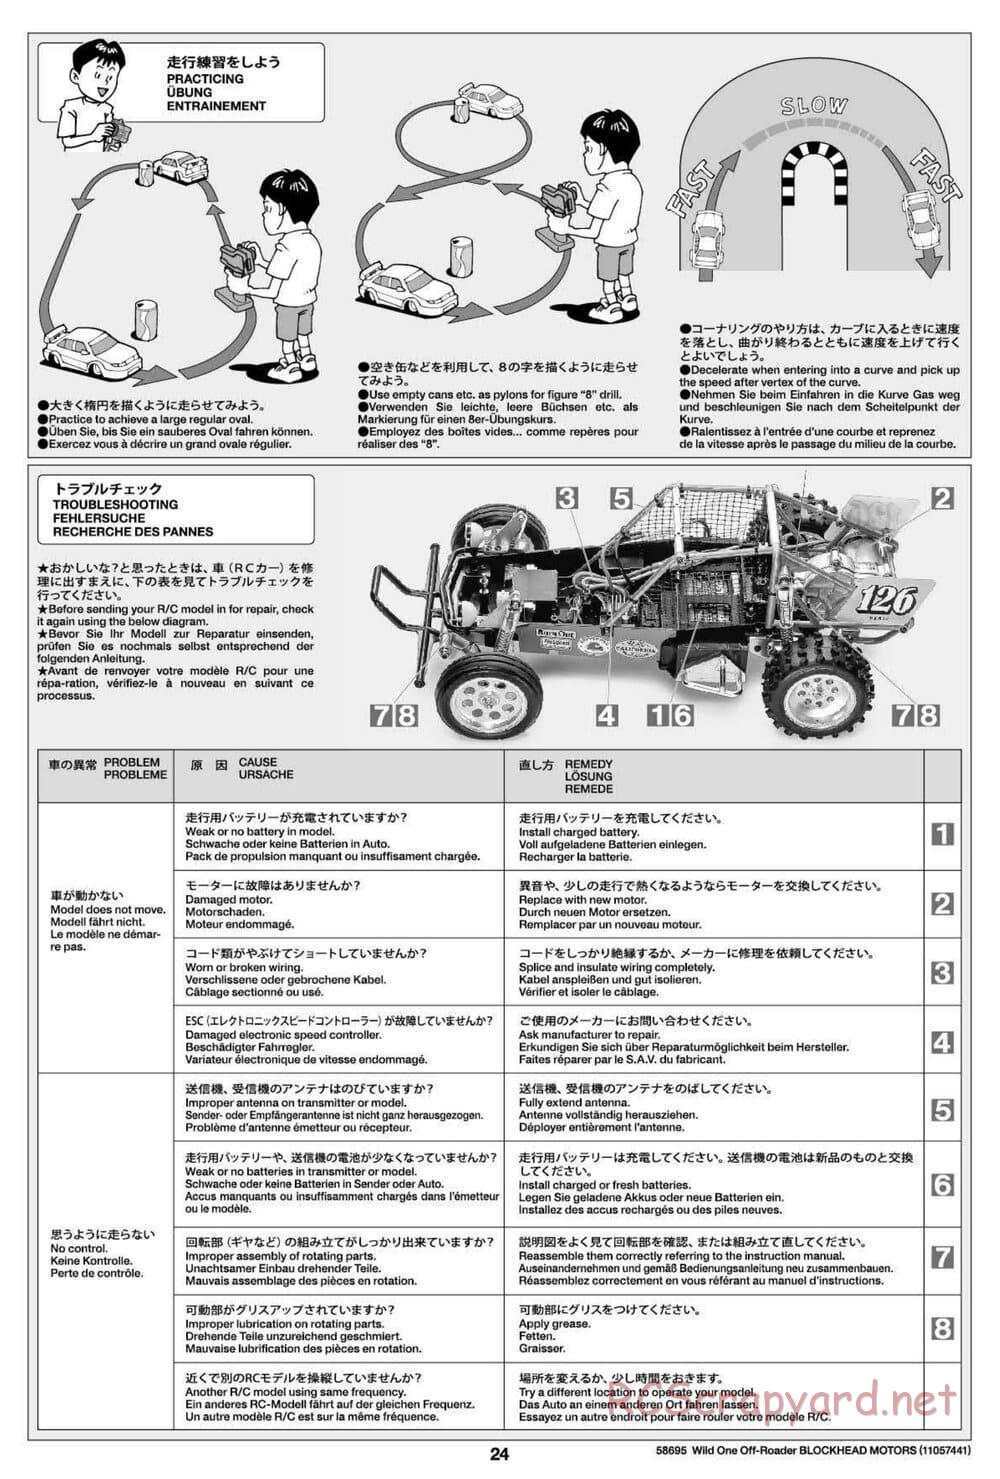 Tamiya - Wild One Off Roader Blockhead Motors - FAV Chassis - Manual - Page 24